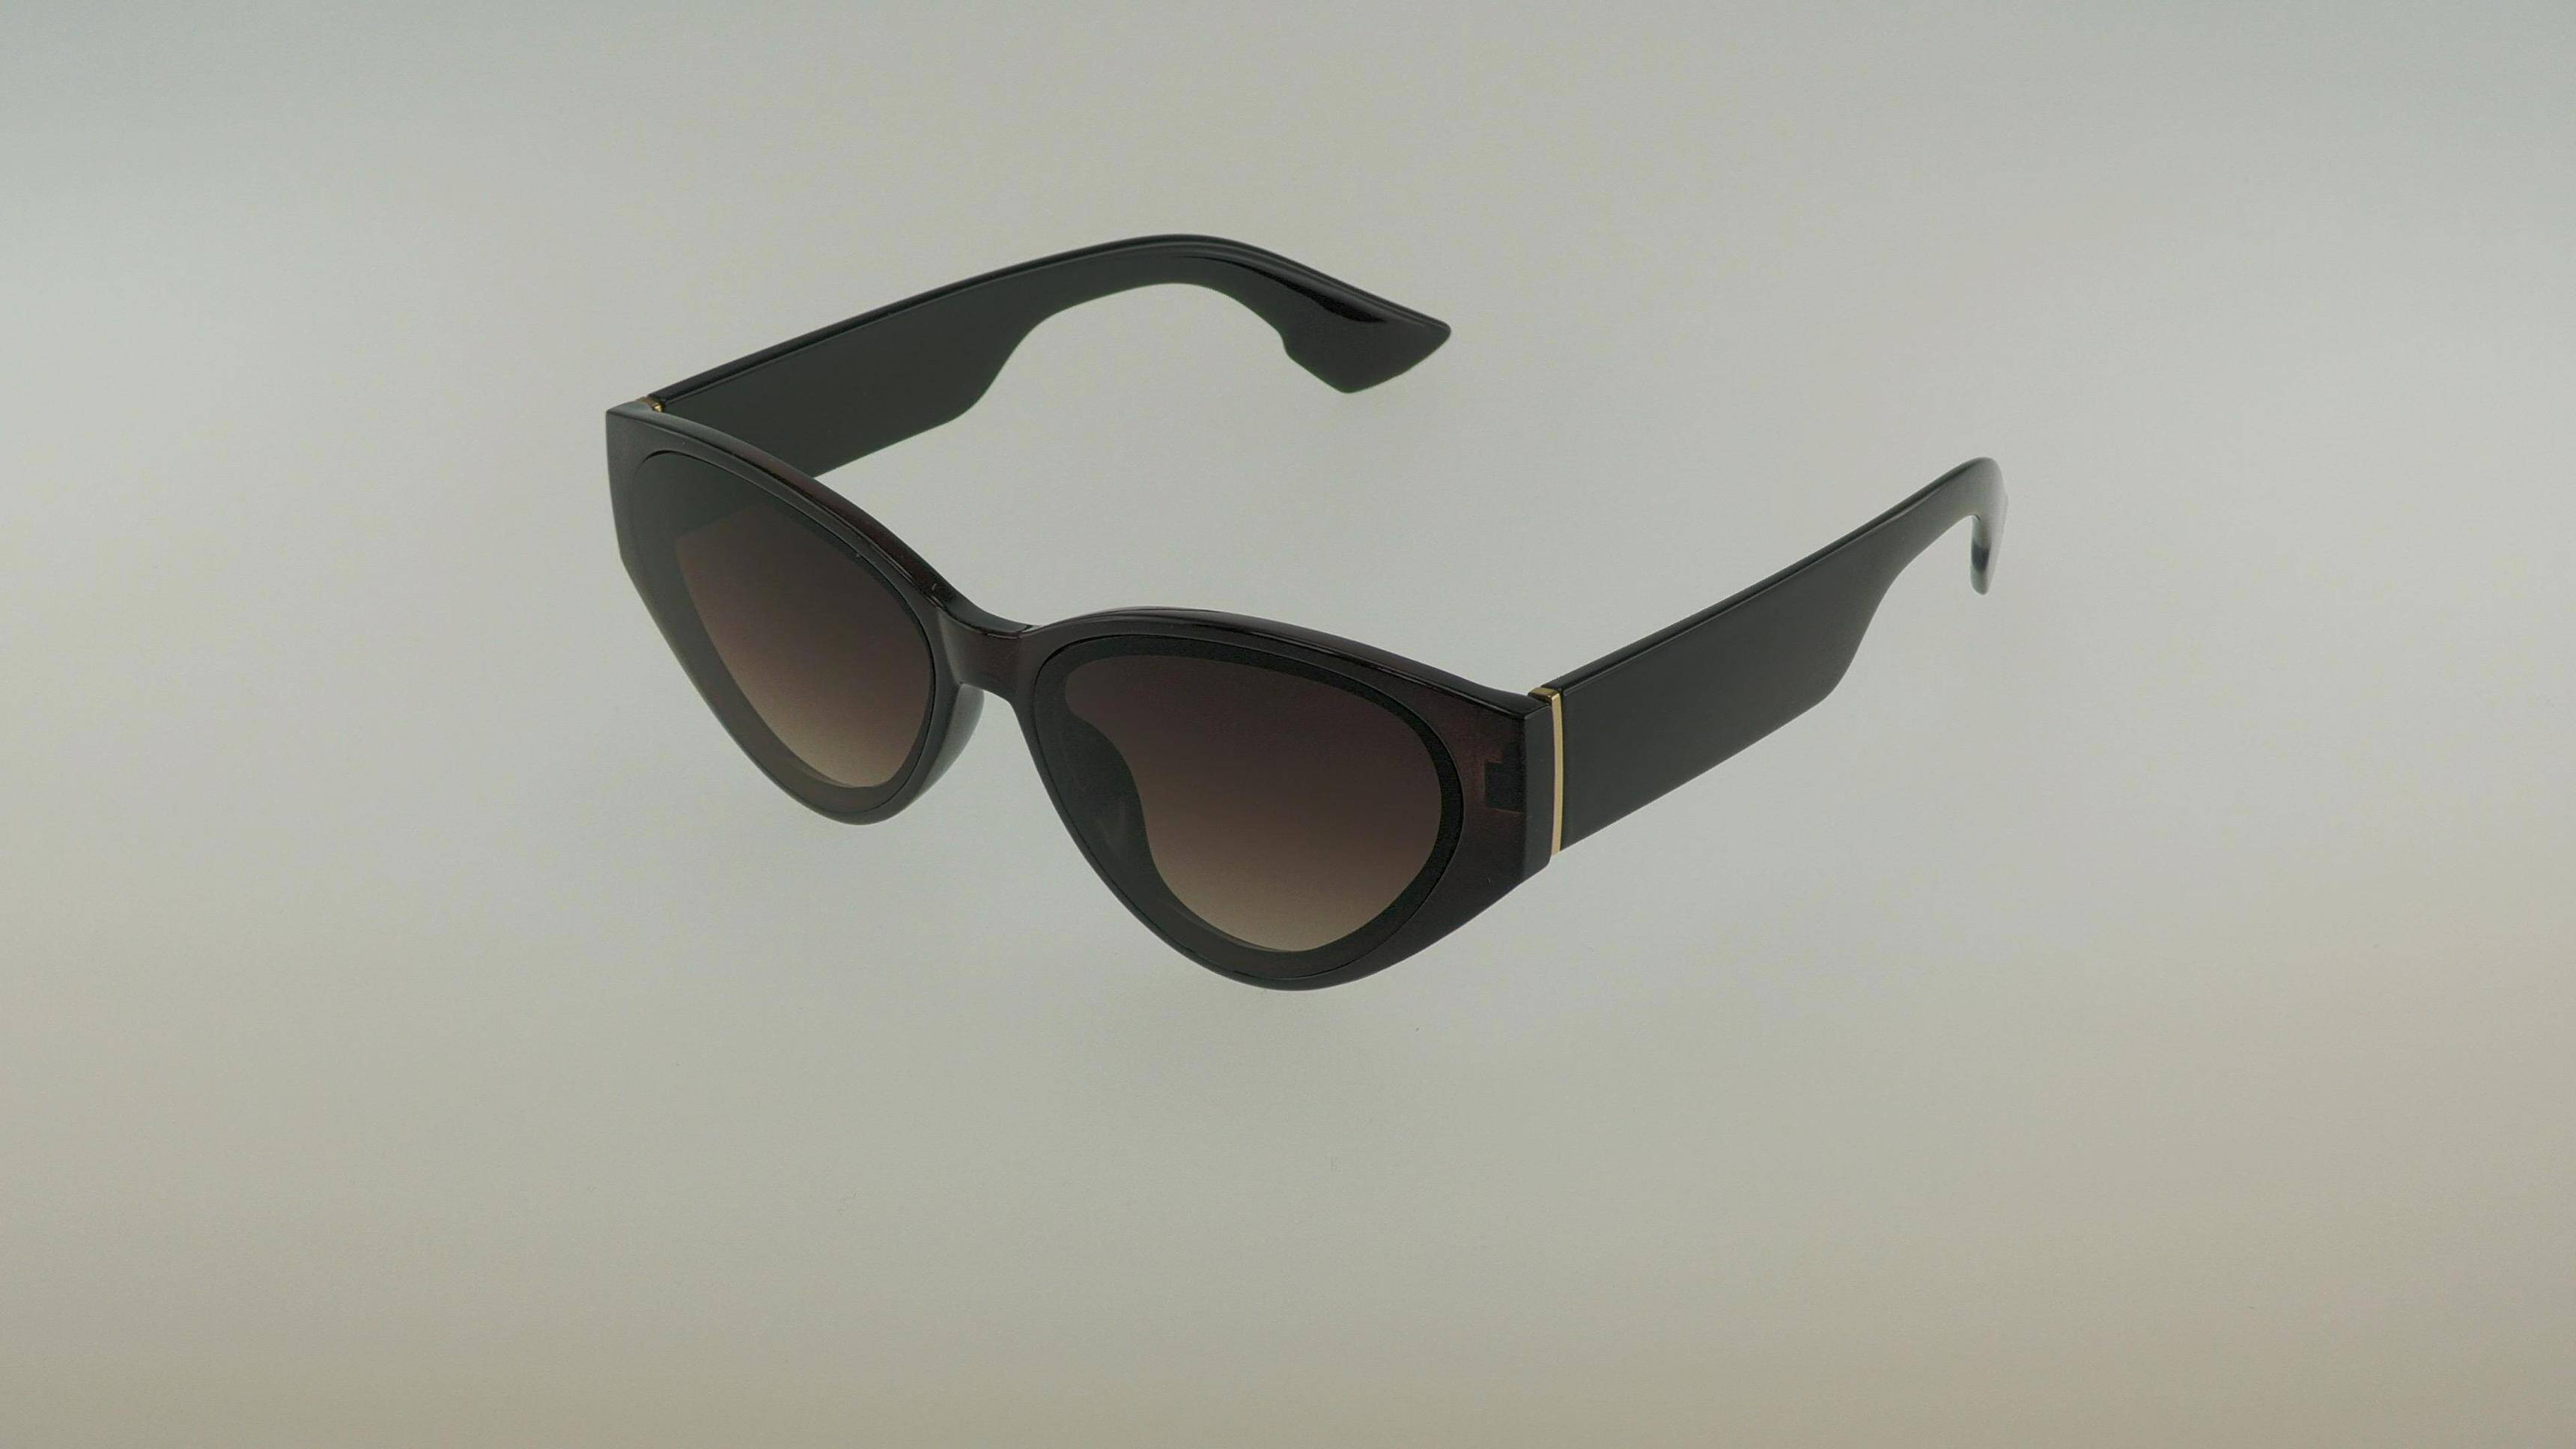 Okulary przeciwsłoneczne 323138 brown (Zdjęcie 1)